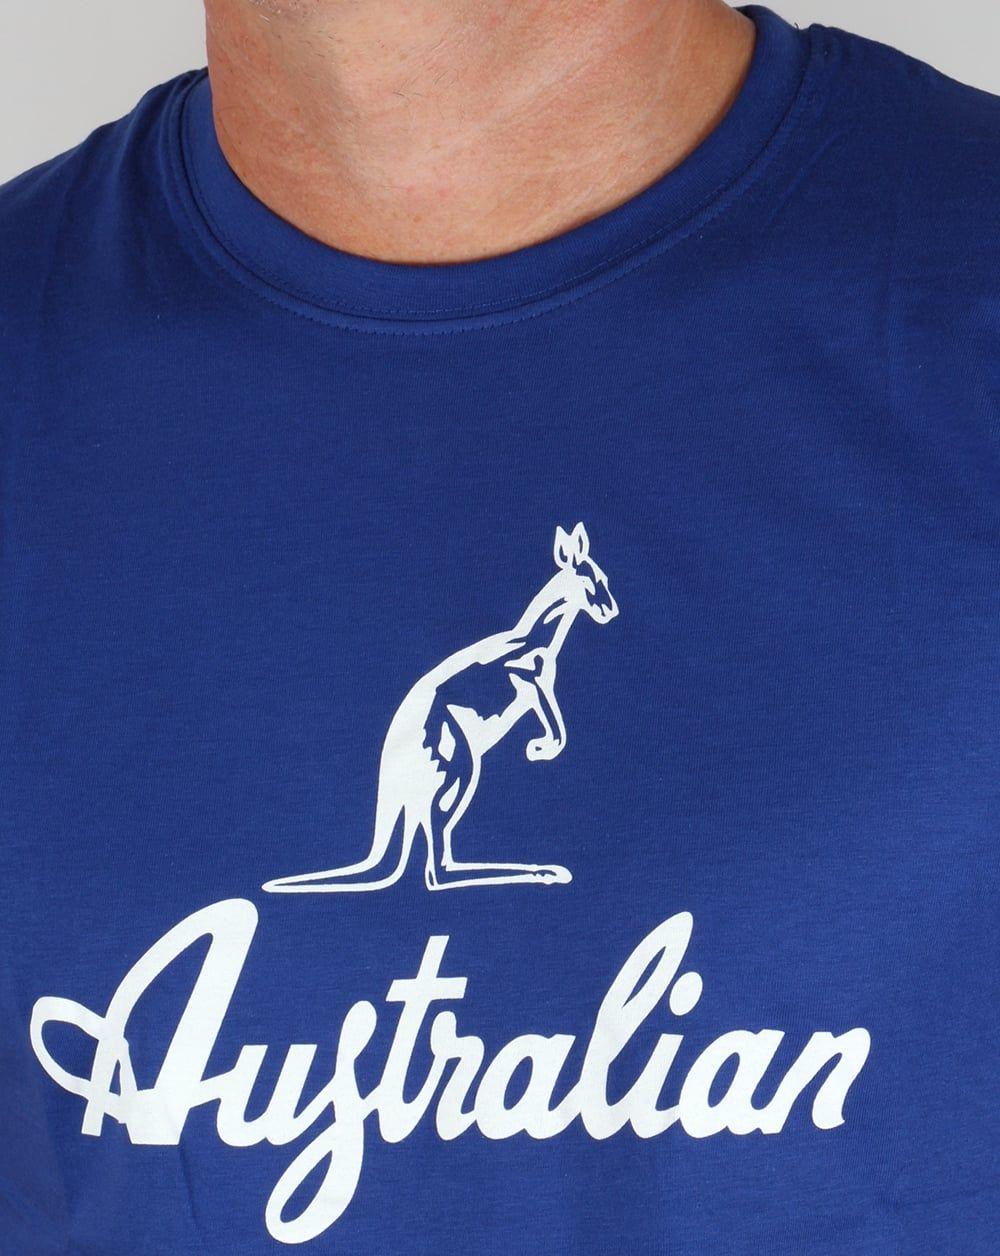 Red and White Kangaroo Logo - Australian By Lalpina Kangaroo Logo T-shirt Royal Blue/White,tee ...